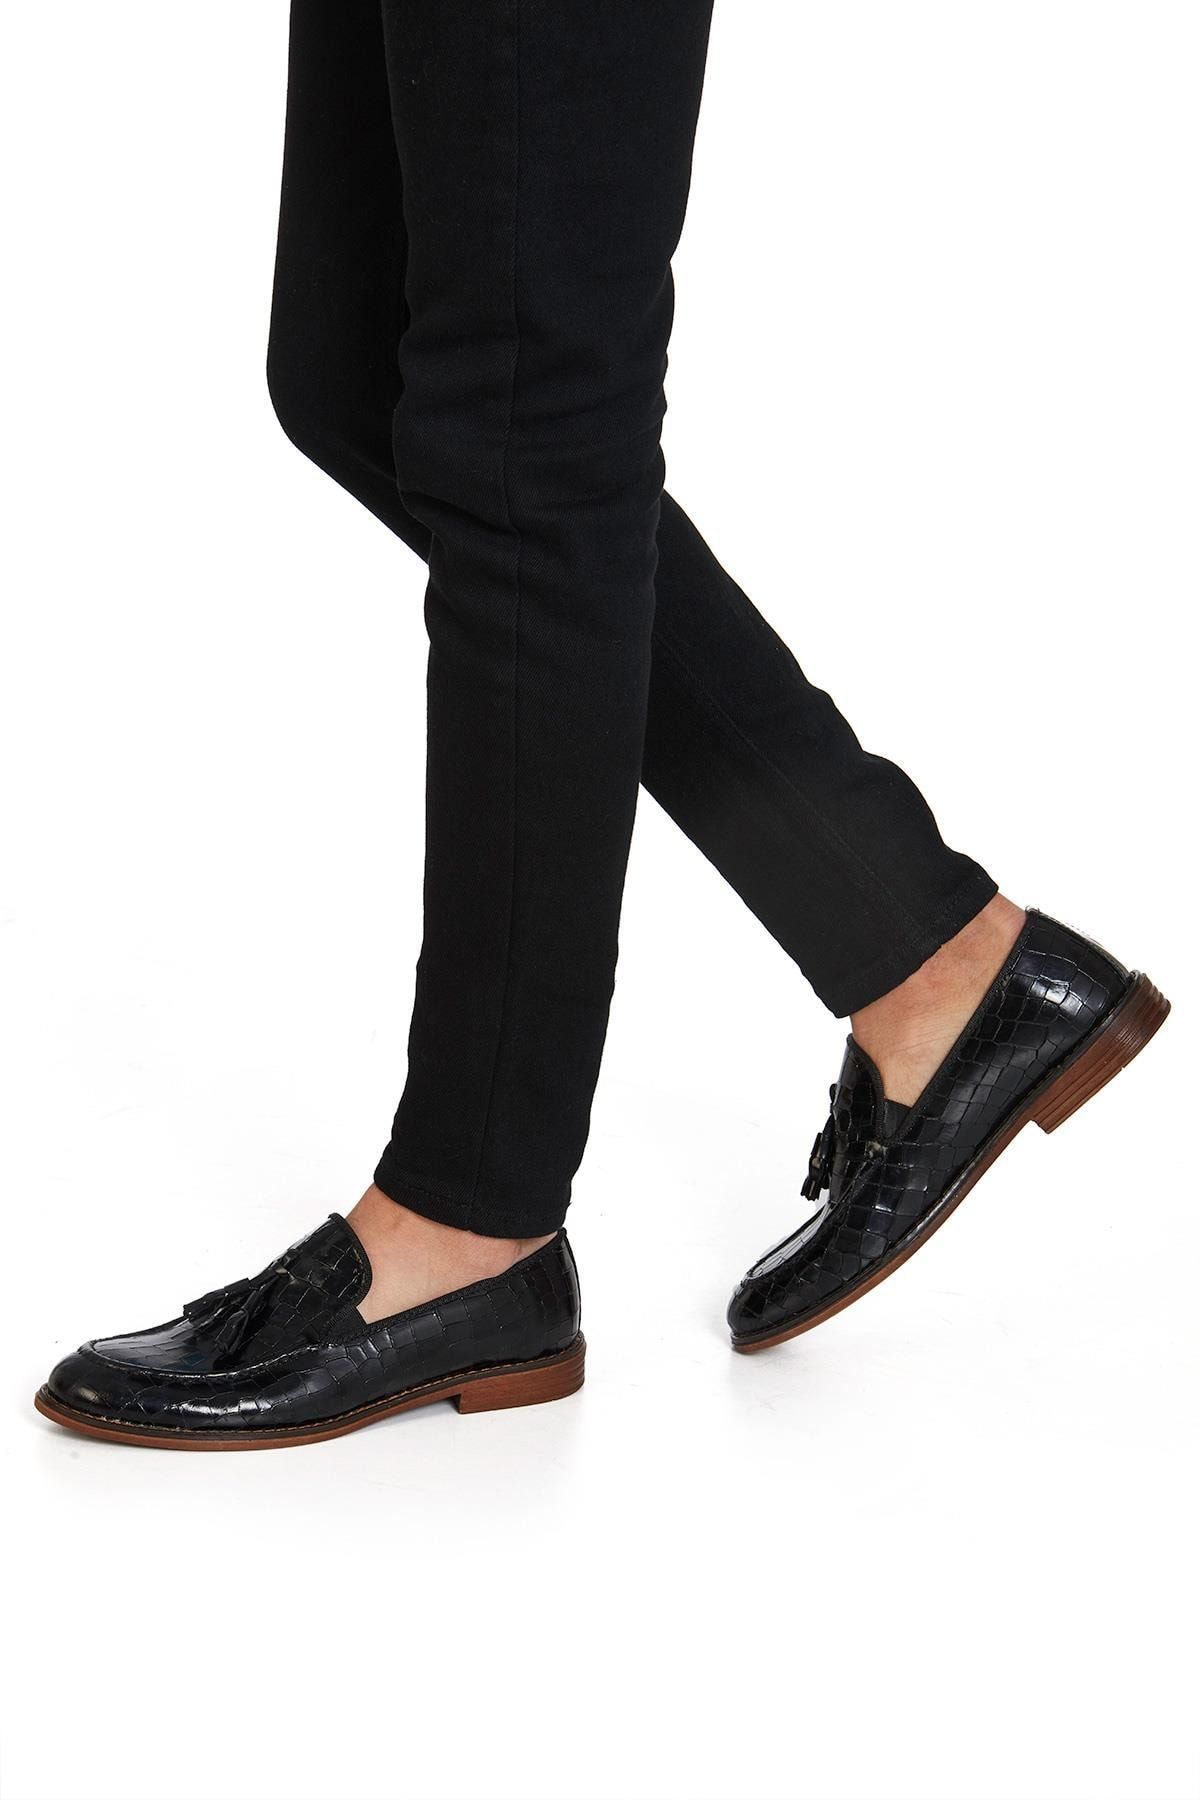 H053 Hakiki Deri Klasik Erkek Ayakkabı